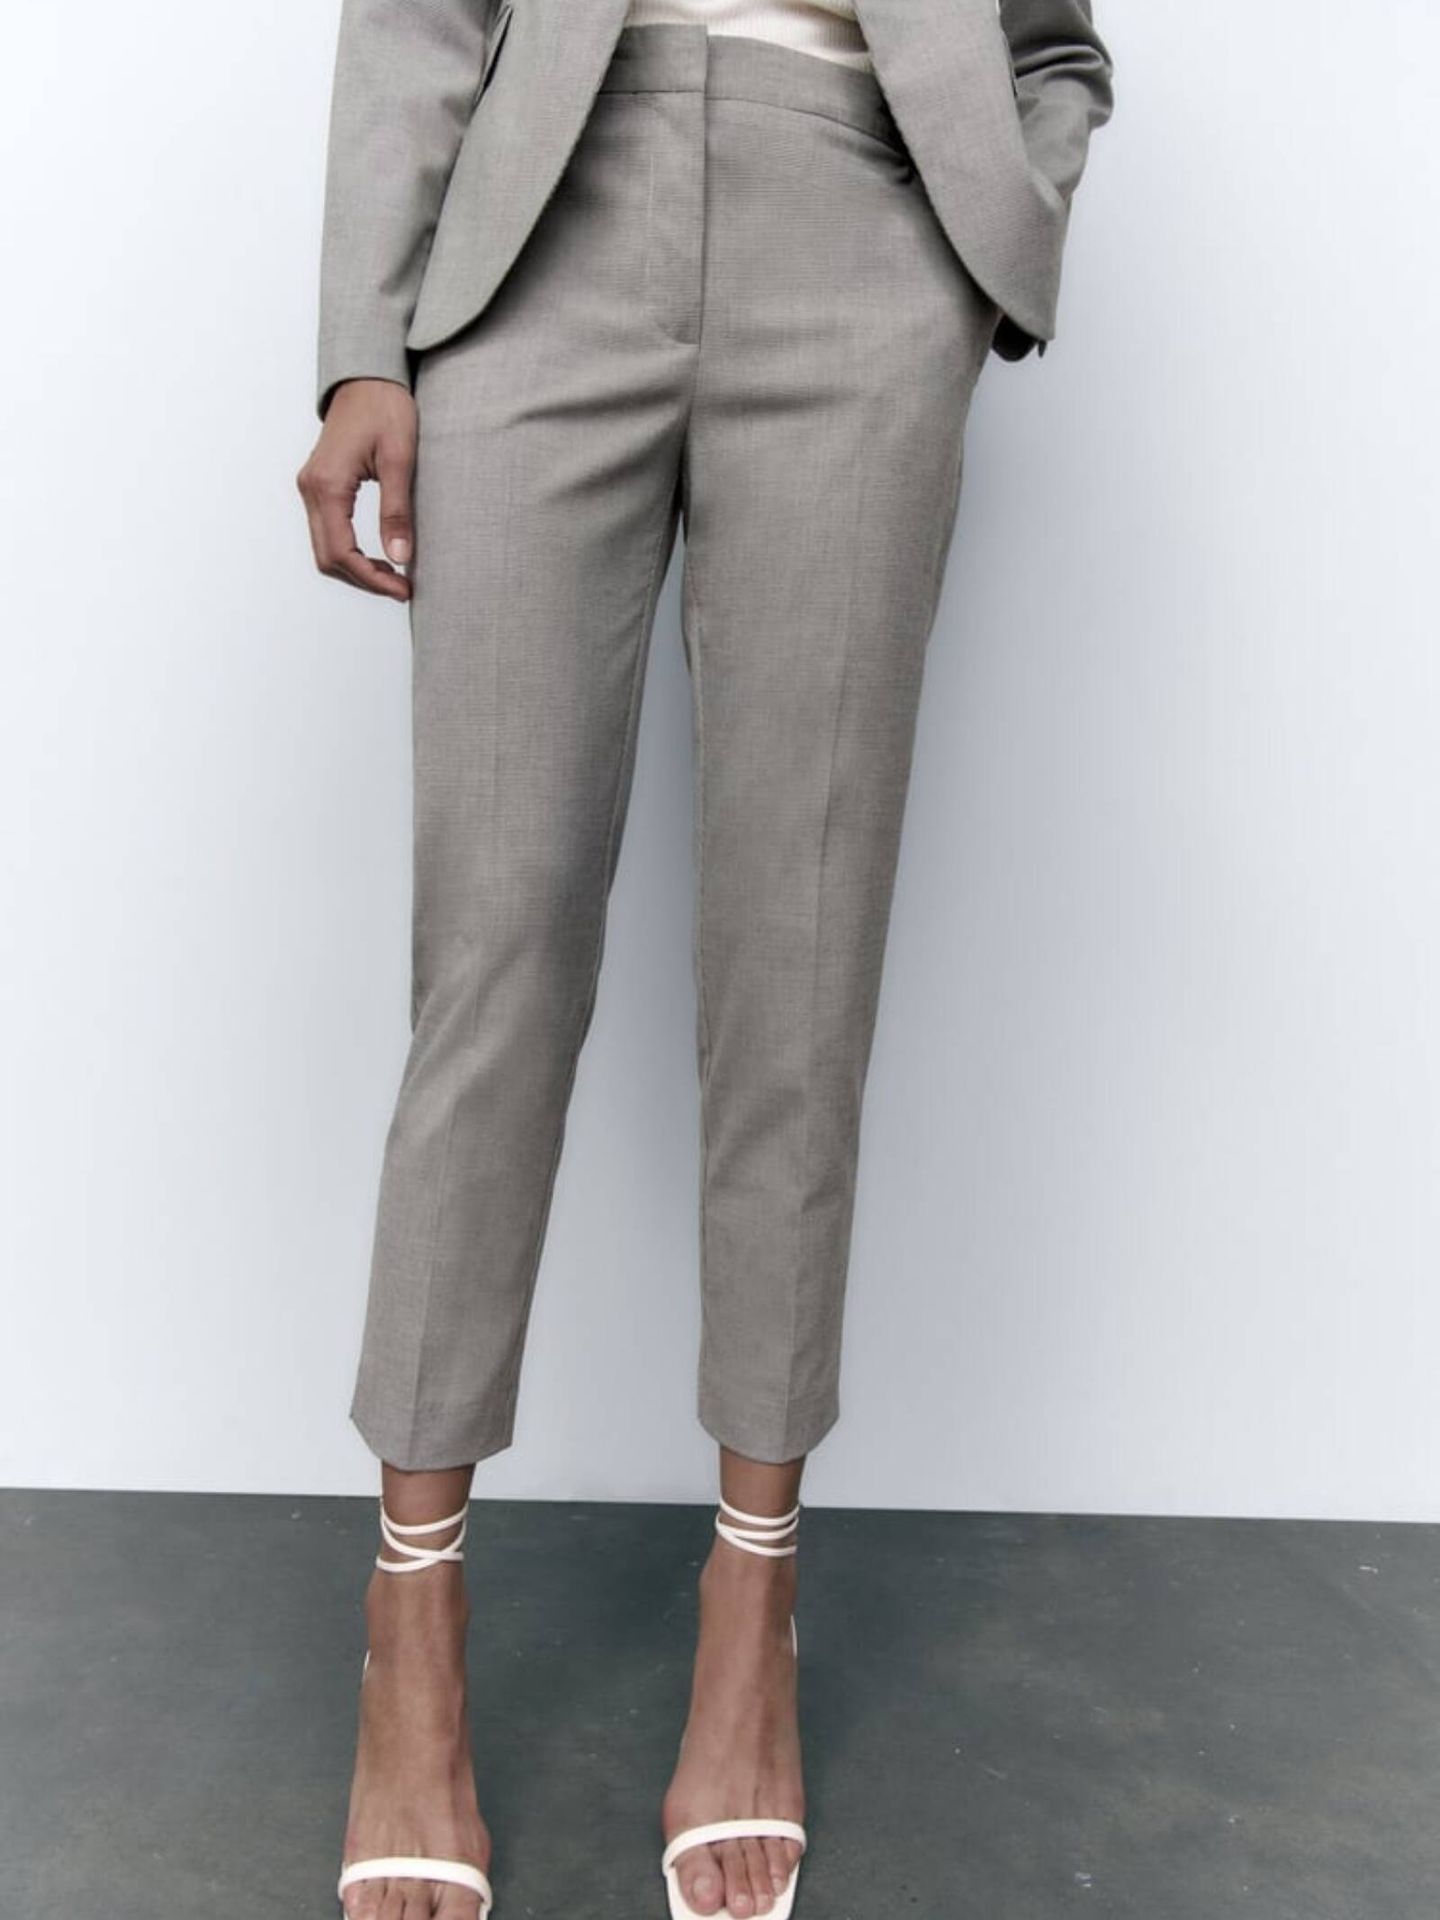 Pantalón de color gris para llevar a diario. (Cortesía/Zara)